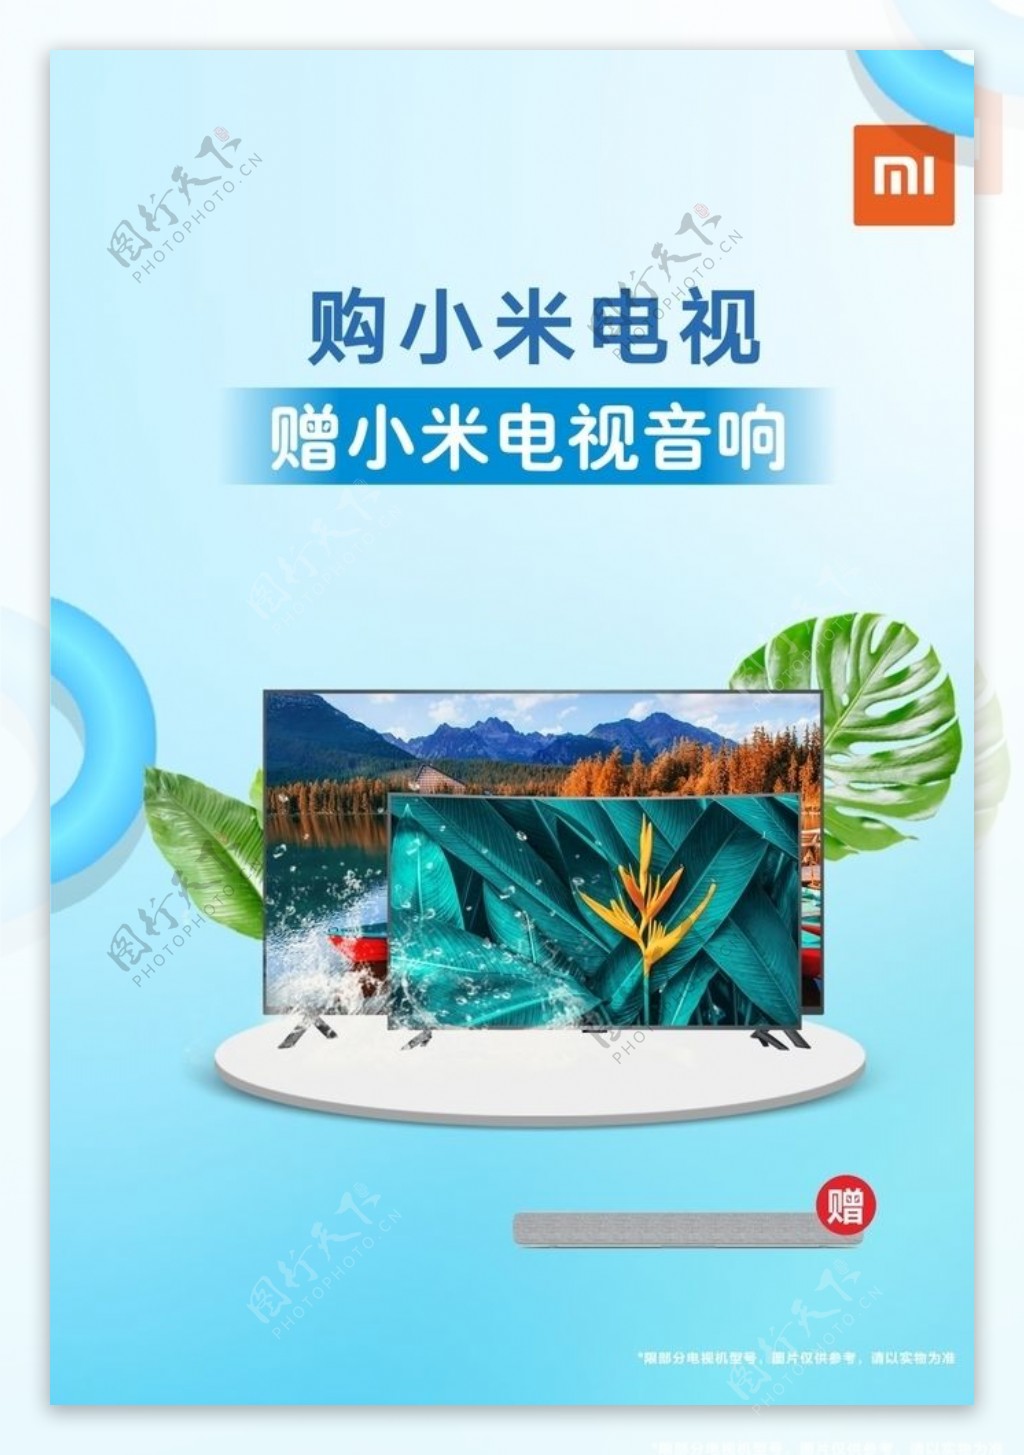 夏季清爽蓝色数码电视海报